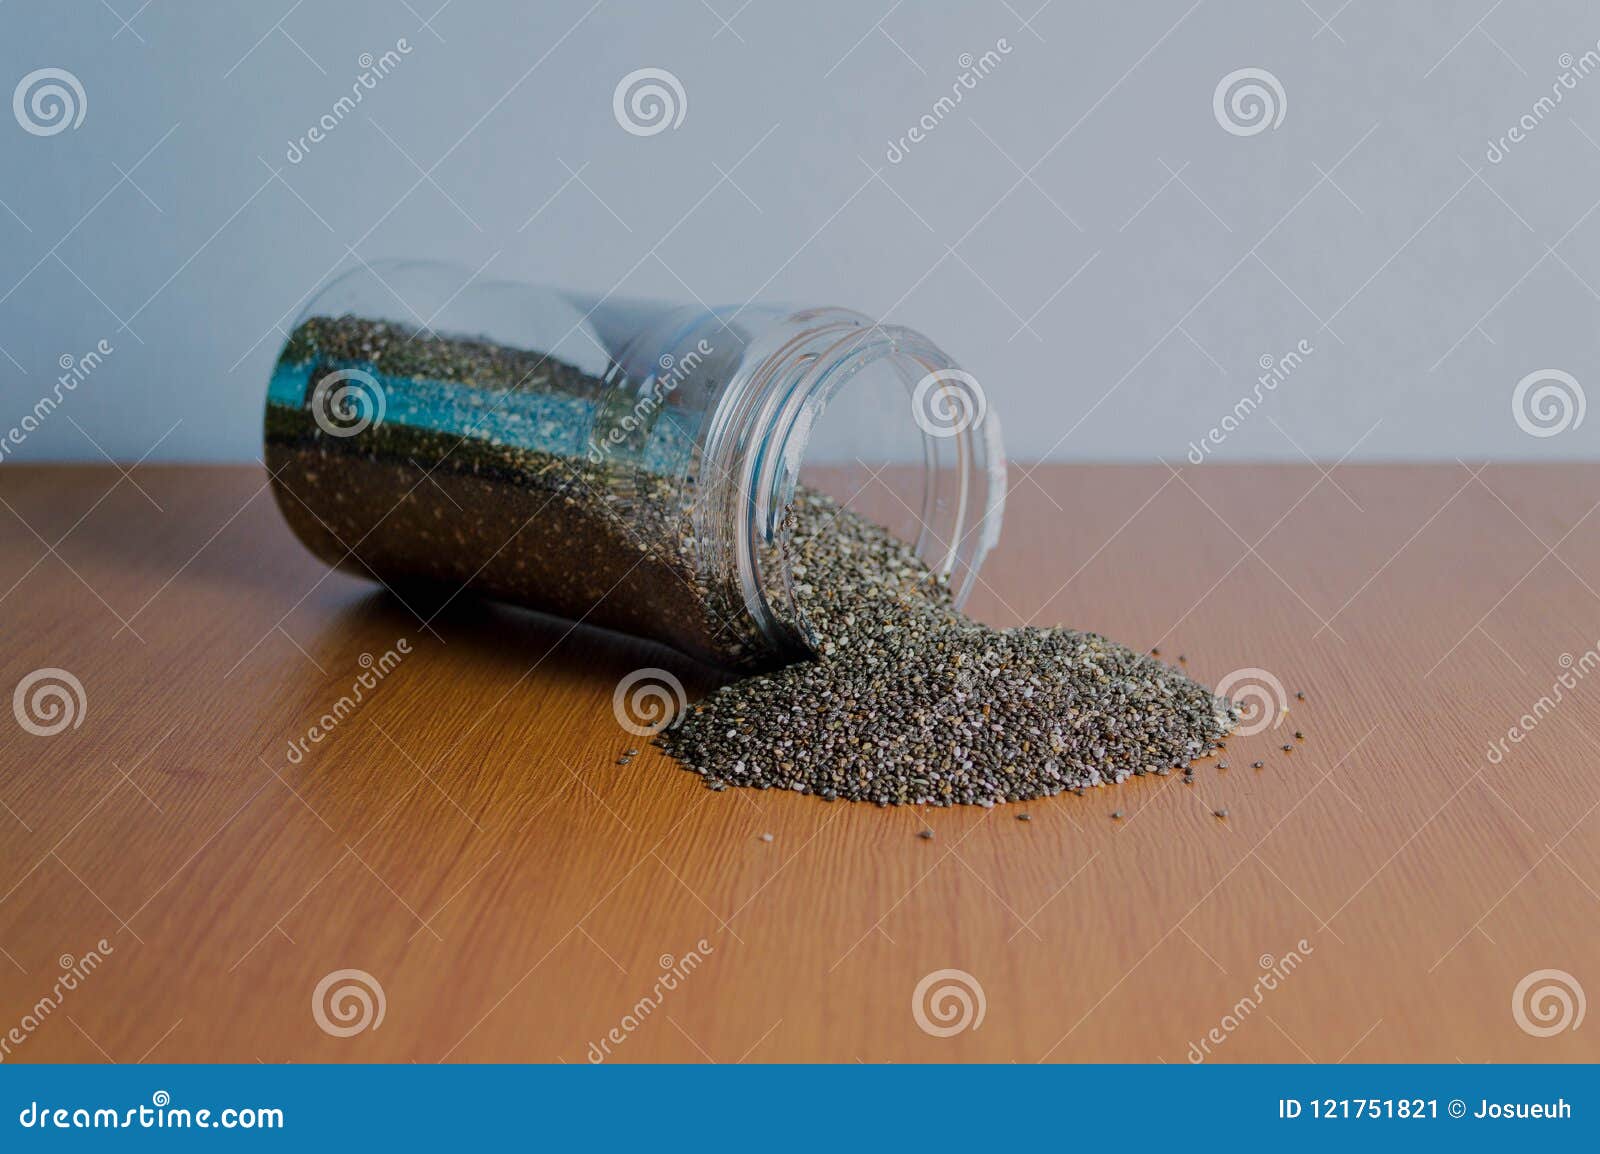 chia seeds in jar